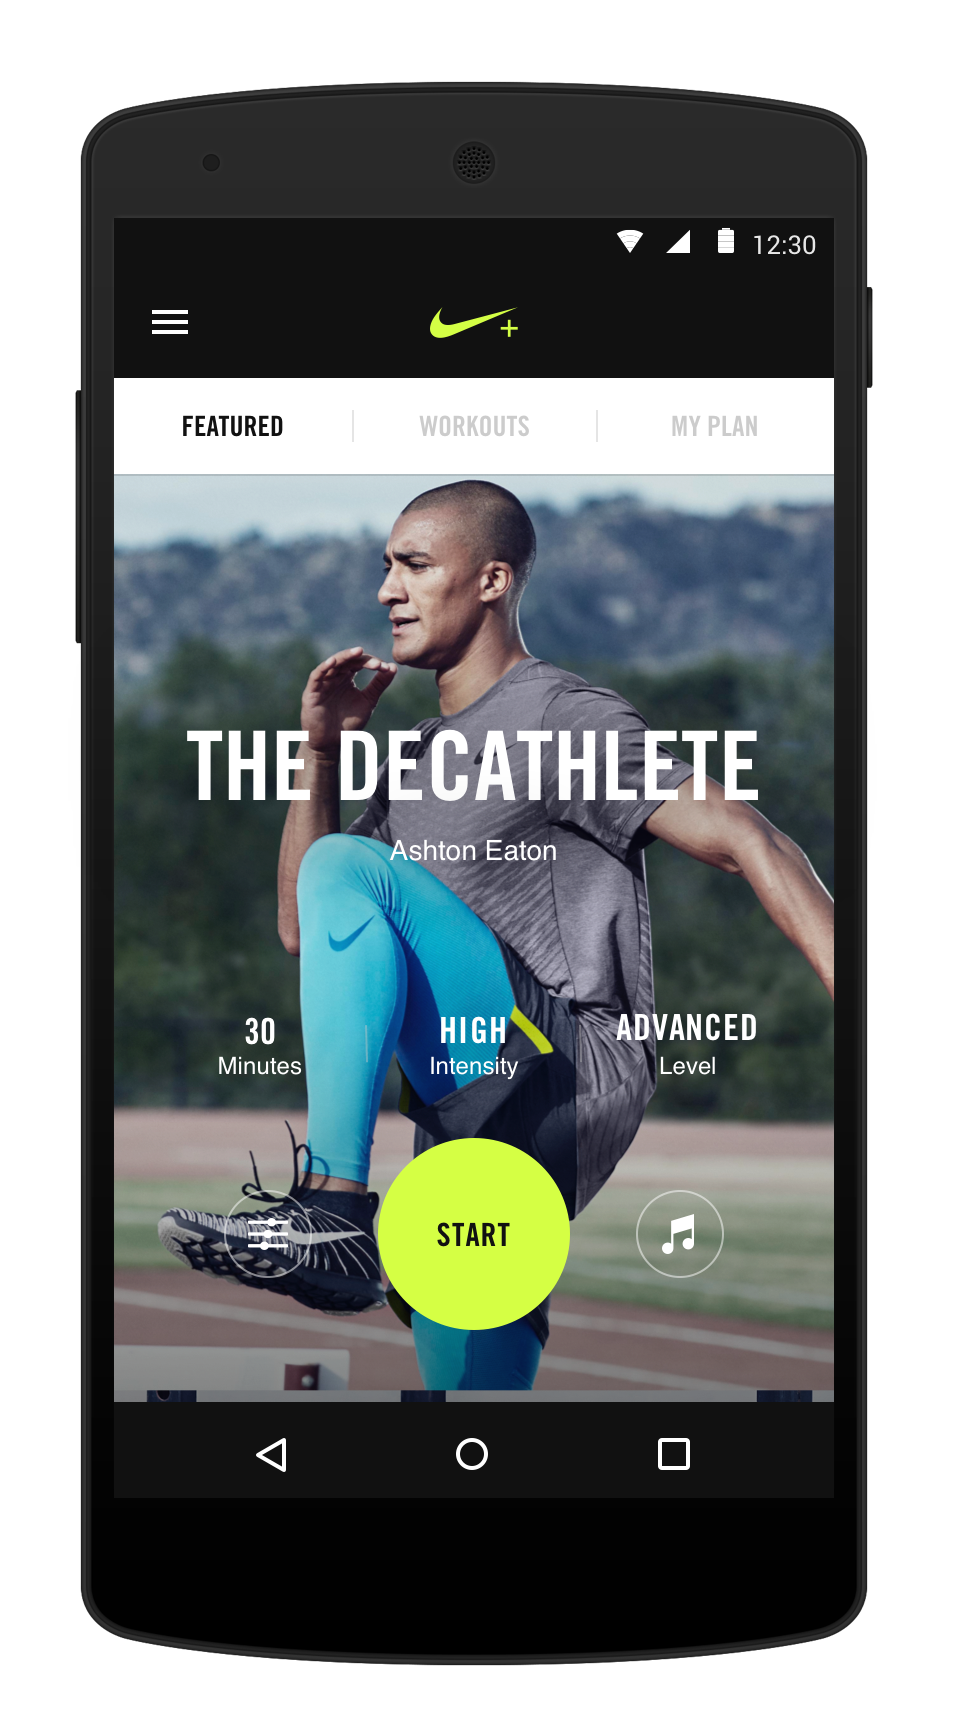 Новое в приложении Nike+ Training Club или о прелестях тренировок в смартфоне